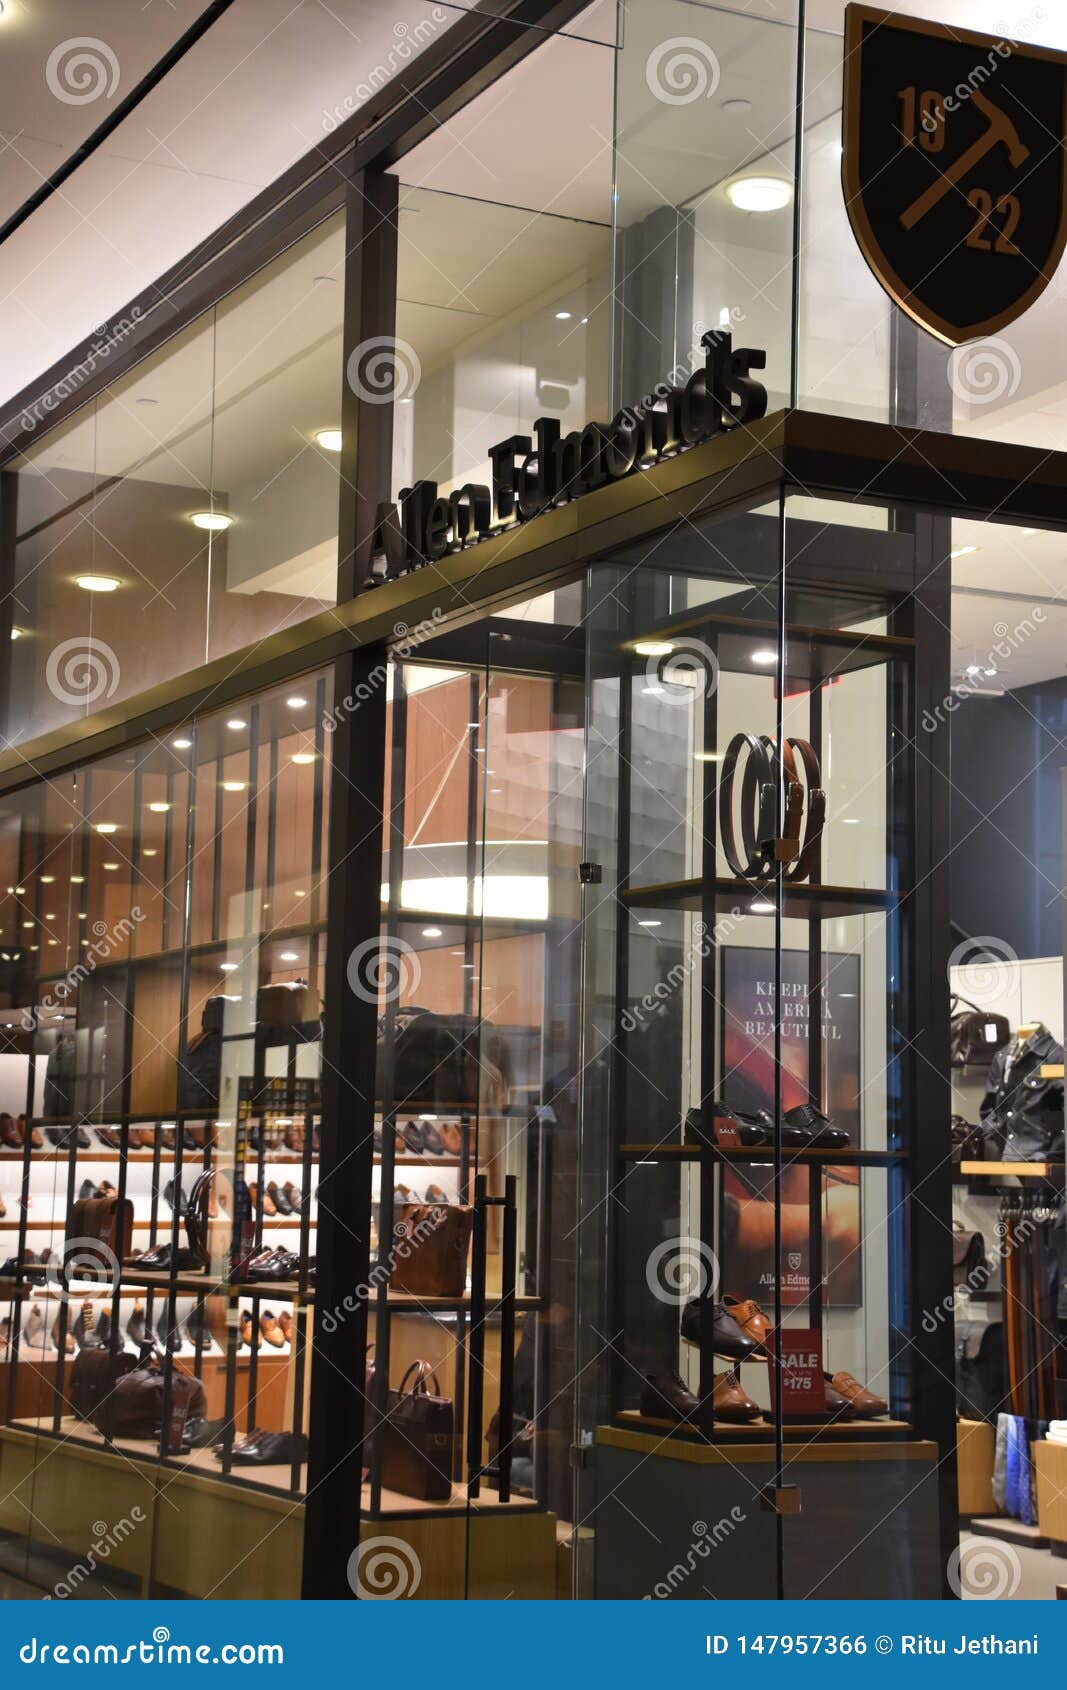 Allen Edmonds Store at Brookfield Place in Manhattan, New York